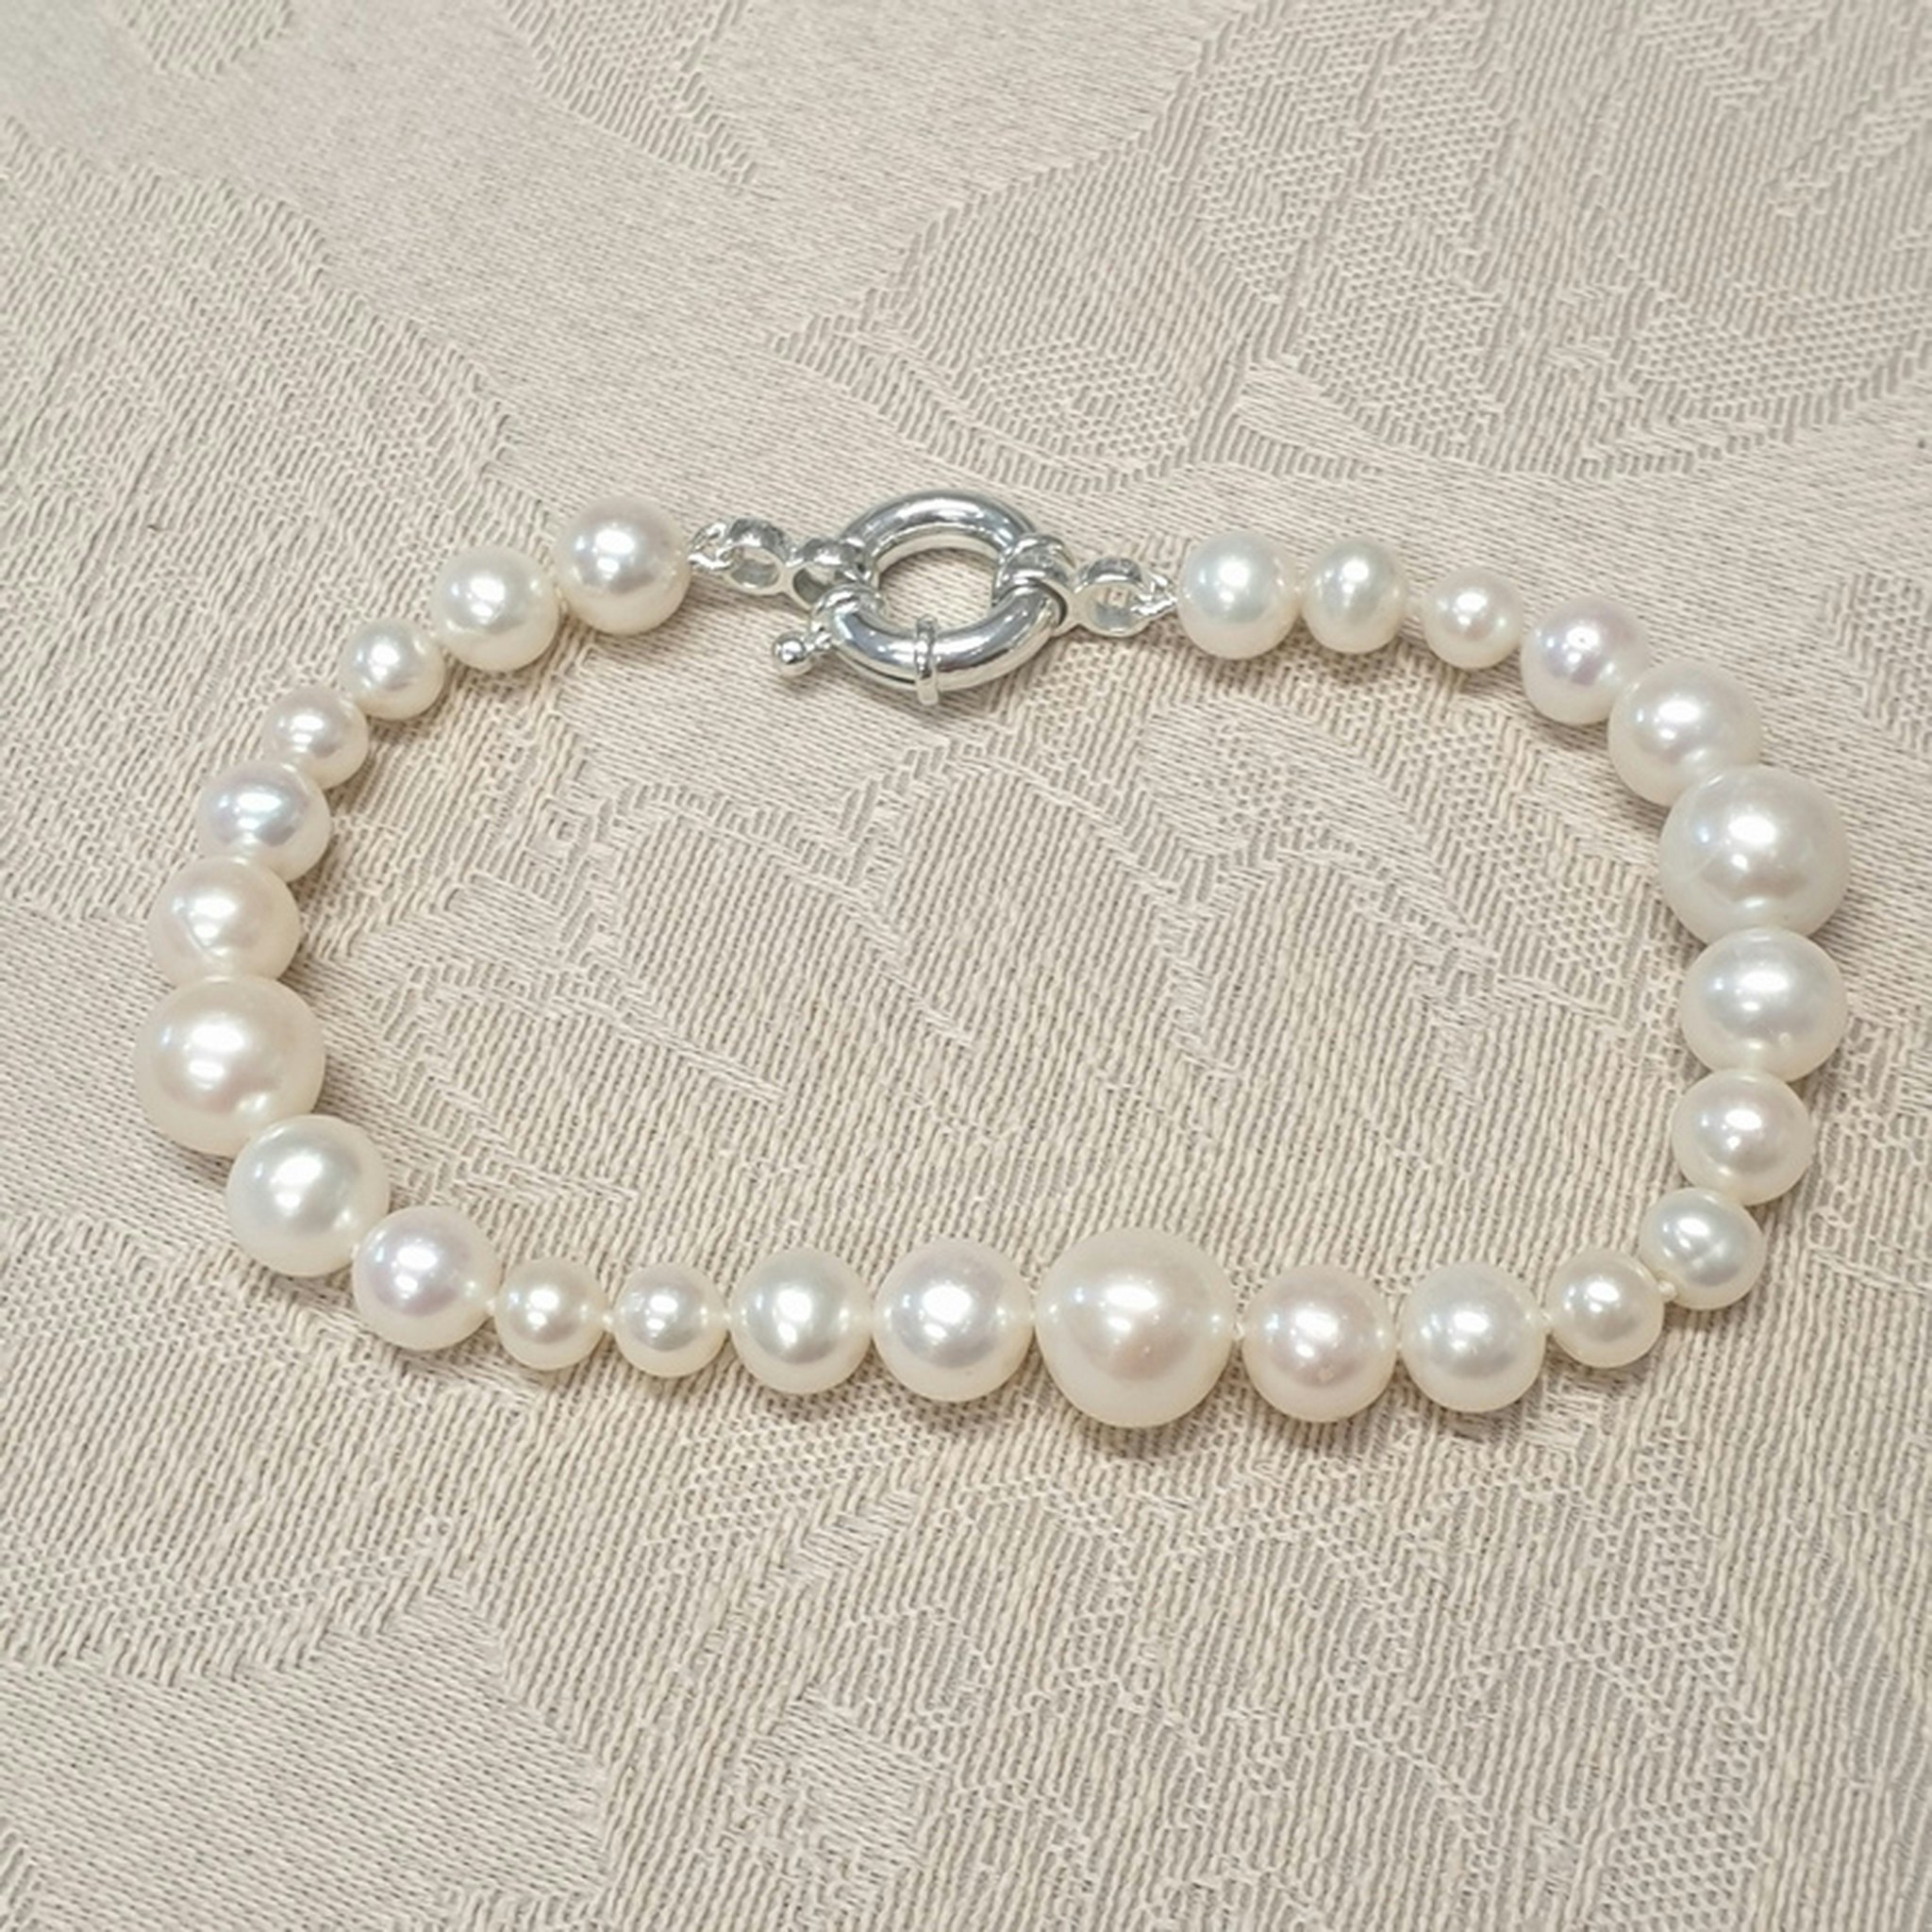 Armband med vita pärlor i olika storlekar